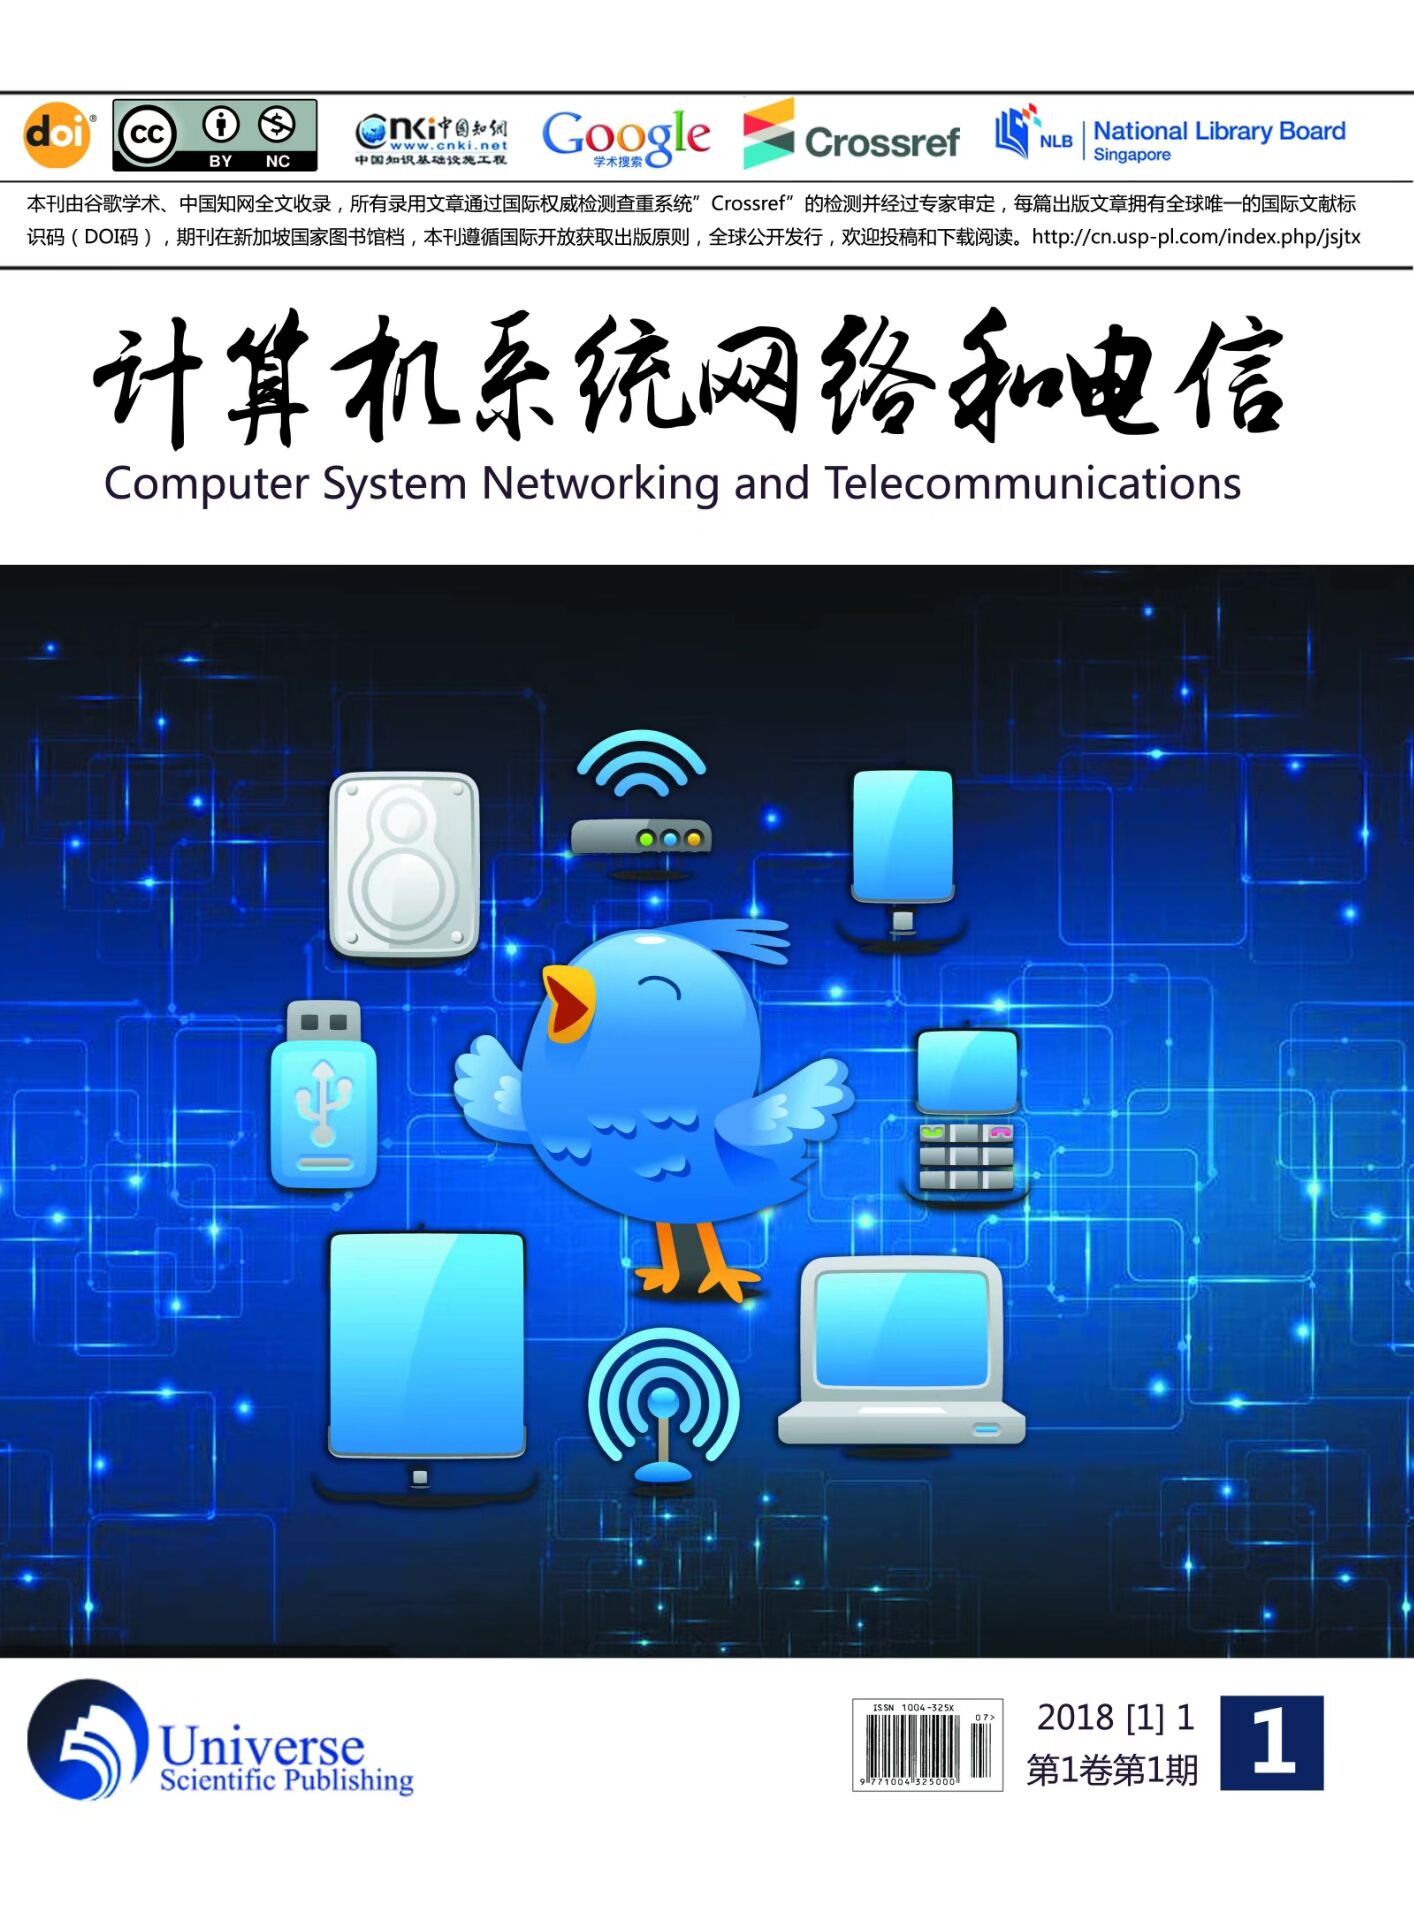 计算机系统网络和电信（中文国际期刊）